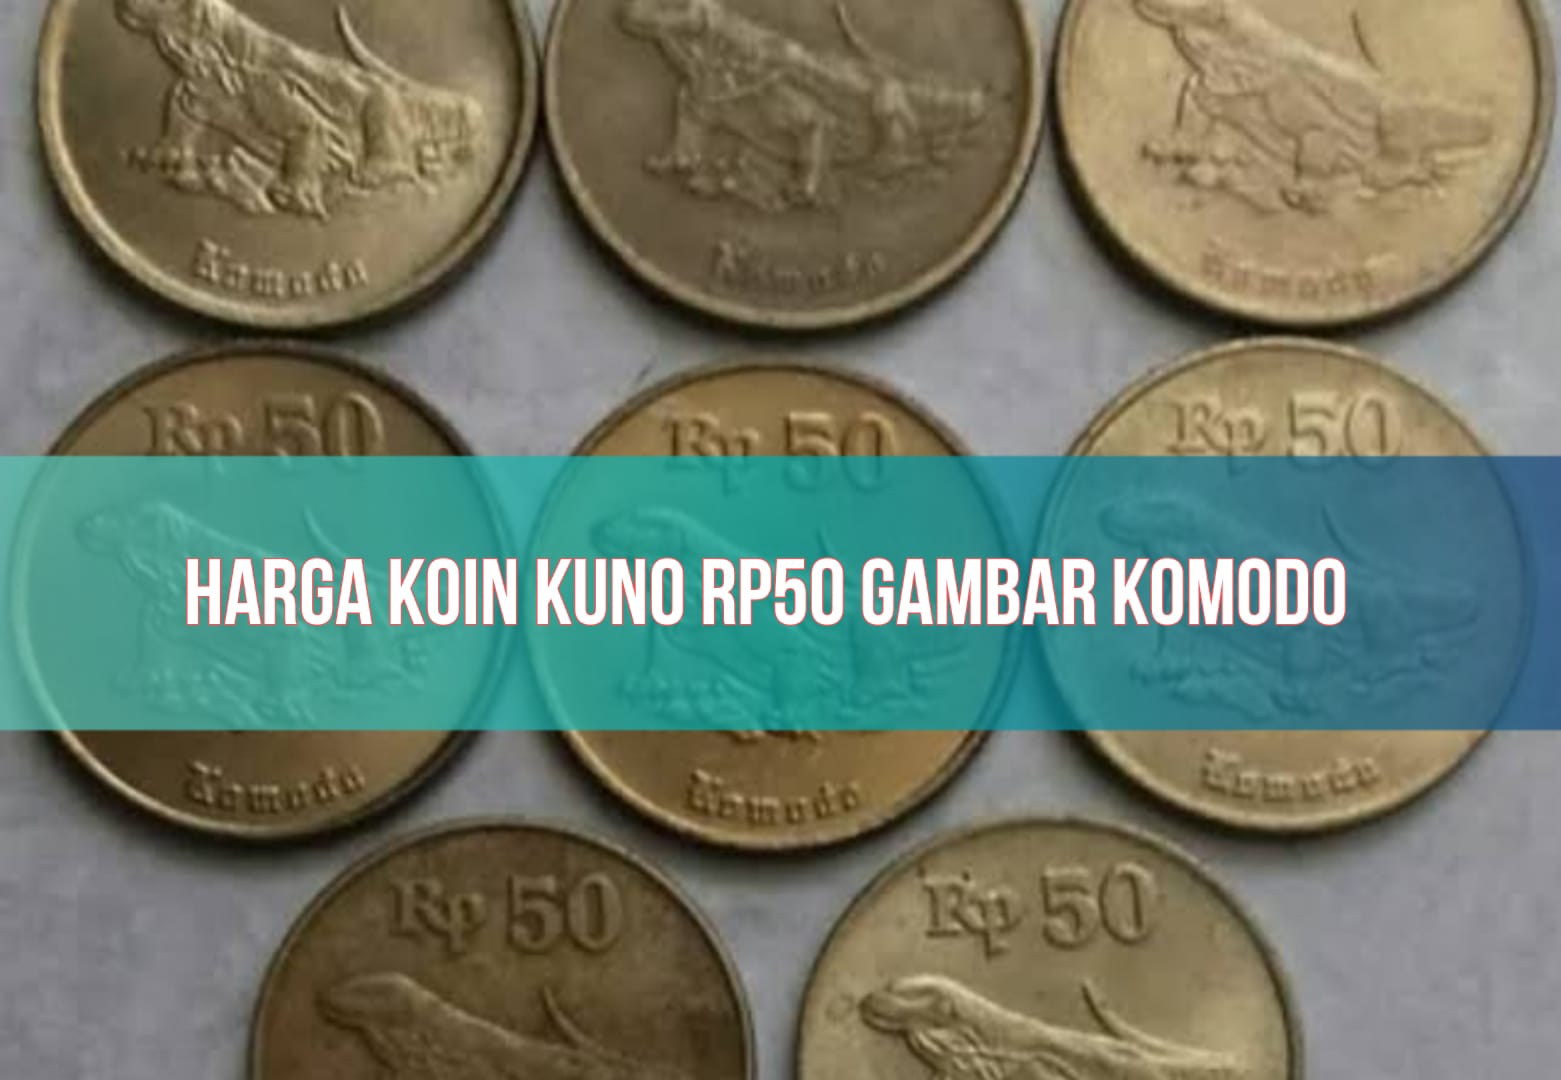 Koin Kuno Rp50 Gambar Komodo Bisa Dijual hingga Rp3.000.000, Begini Caranya!